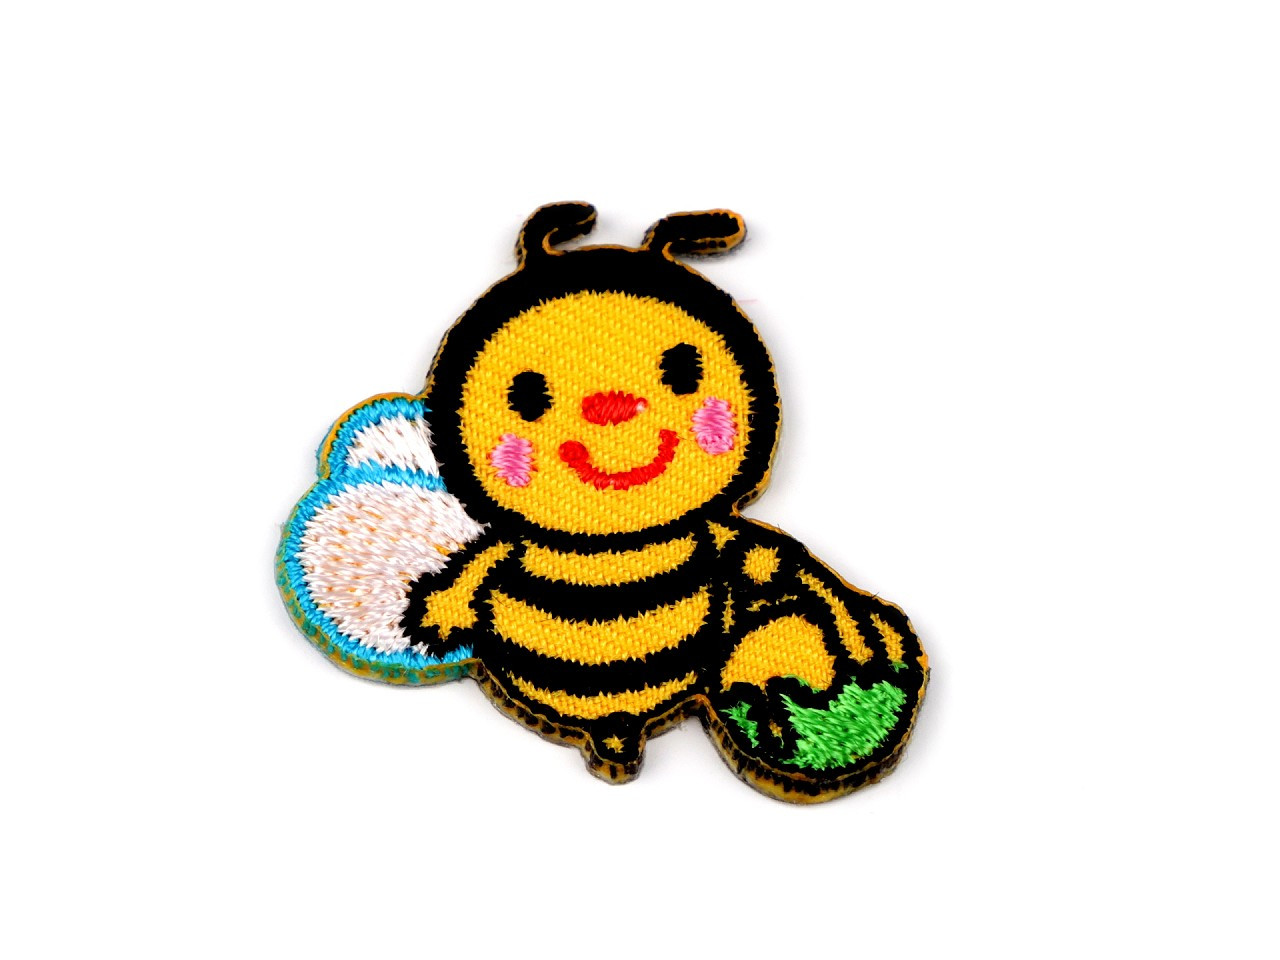 Nažehlovačka zvířata, barva 5 žlutá včela